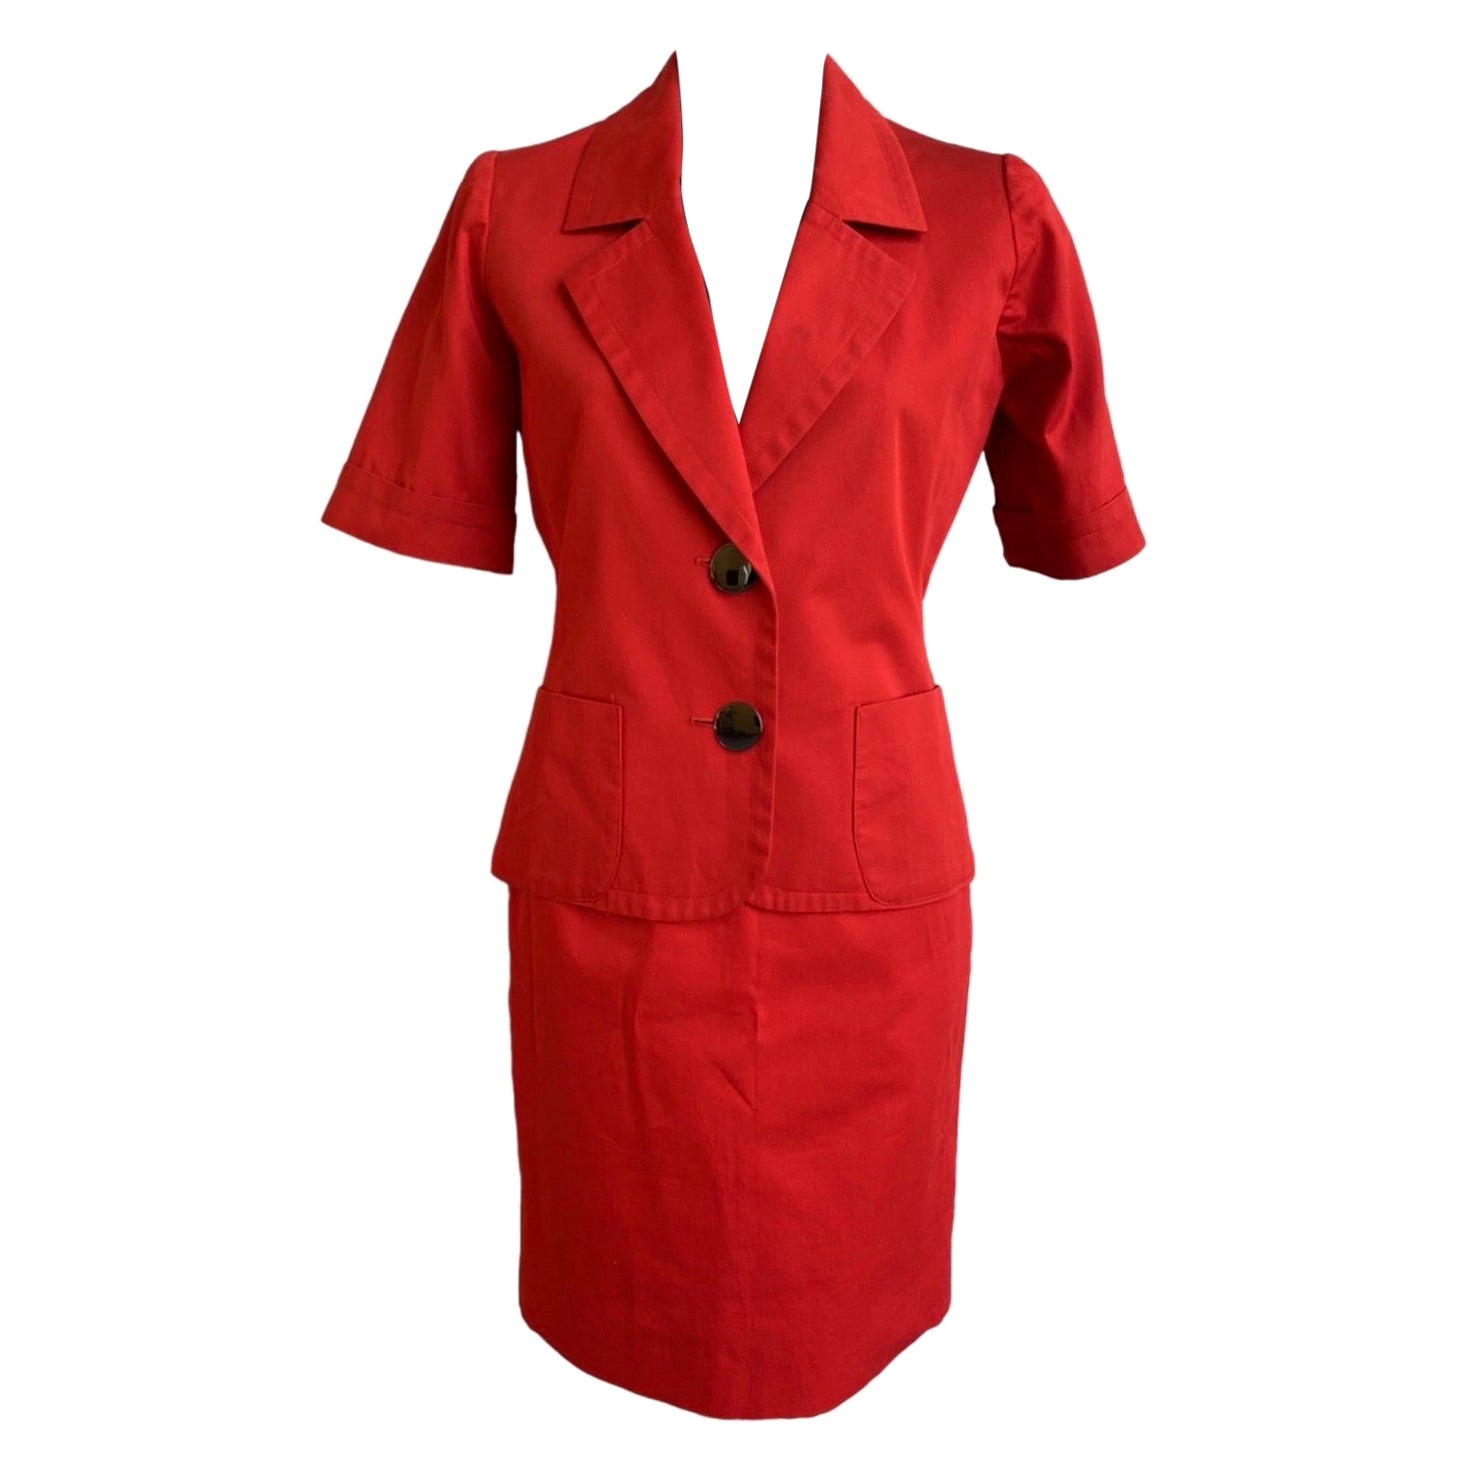 Yves Saint Laurent Vintage red Suit